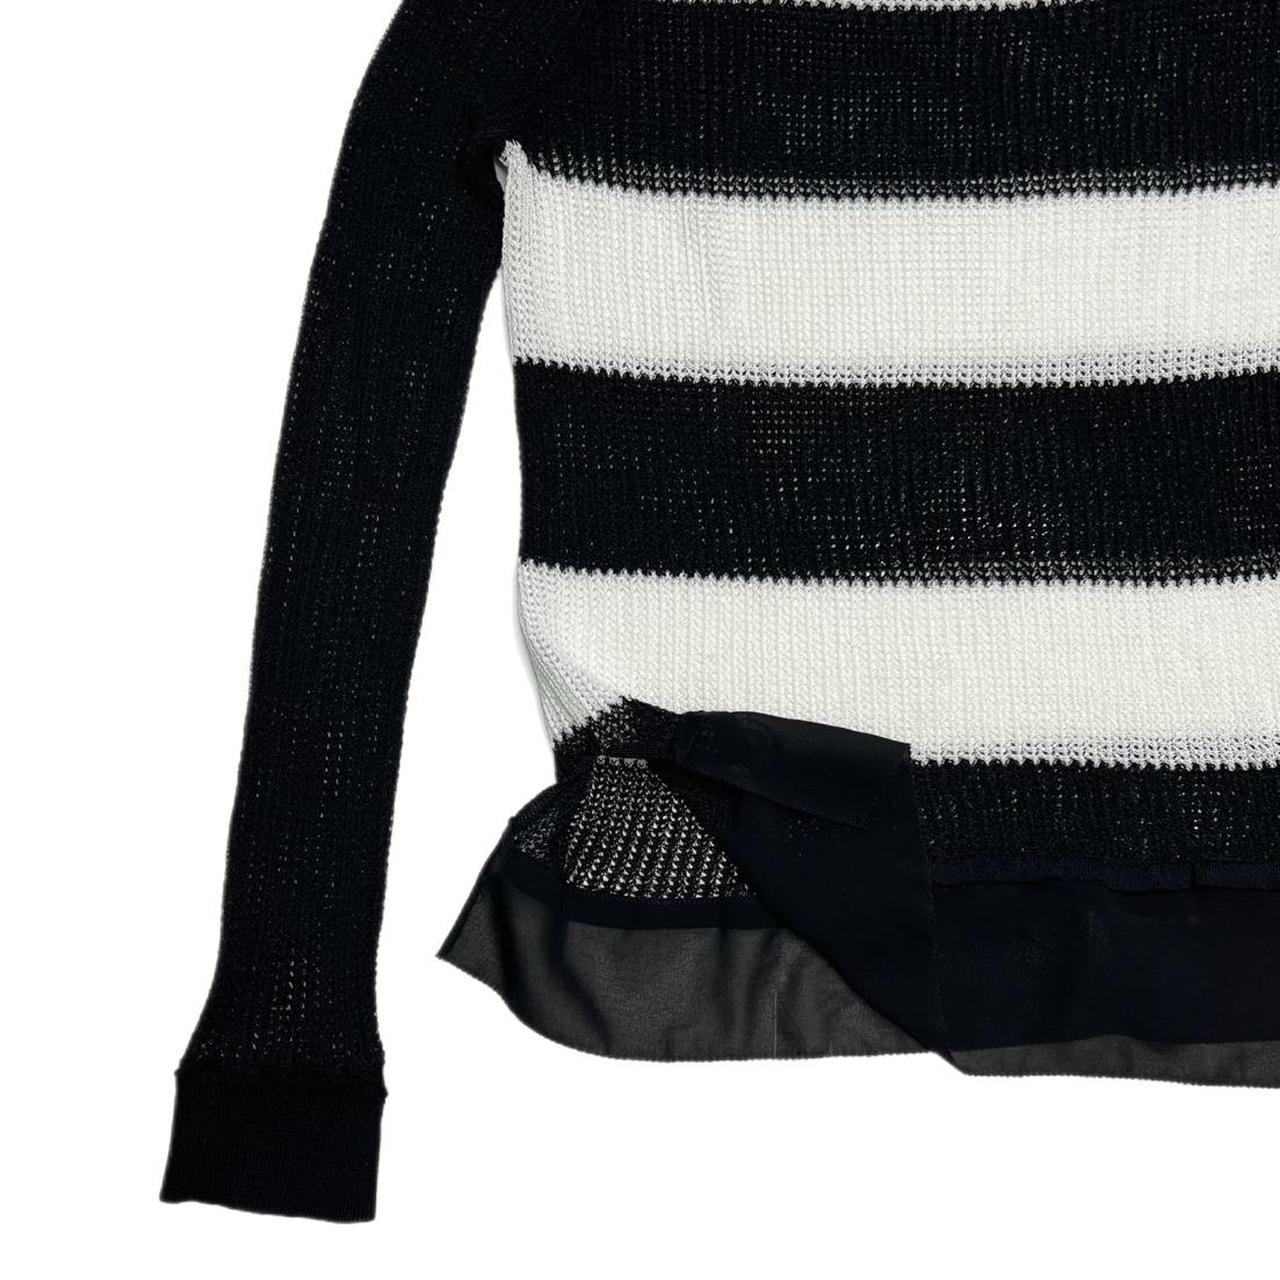 Helmut Lang black knit bra top in size XS/S in great - Depop